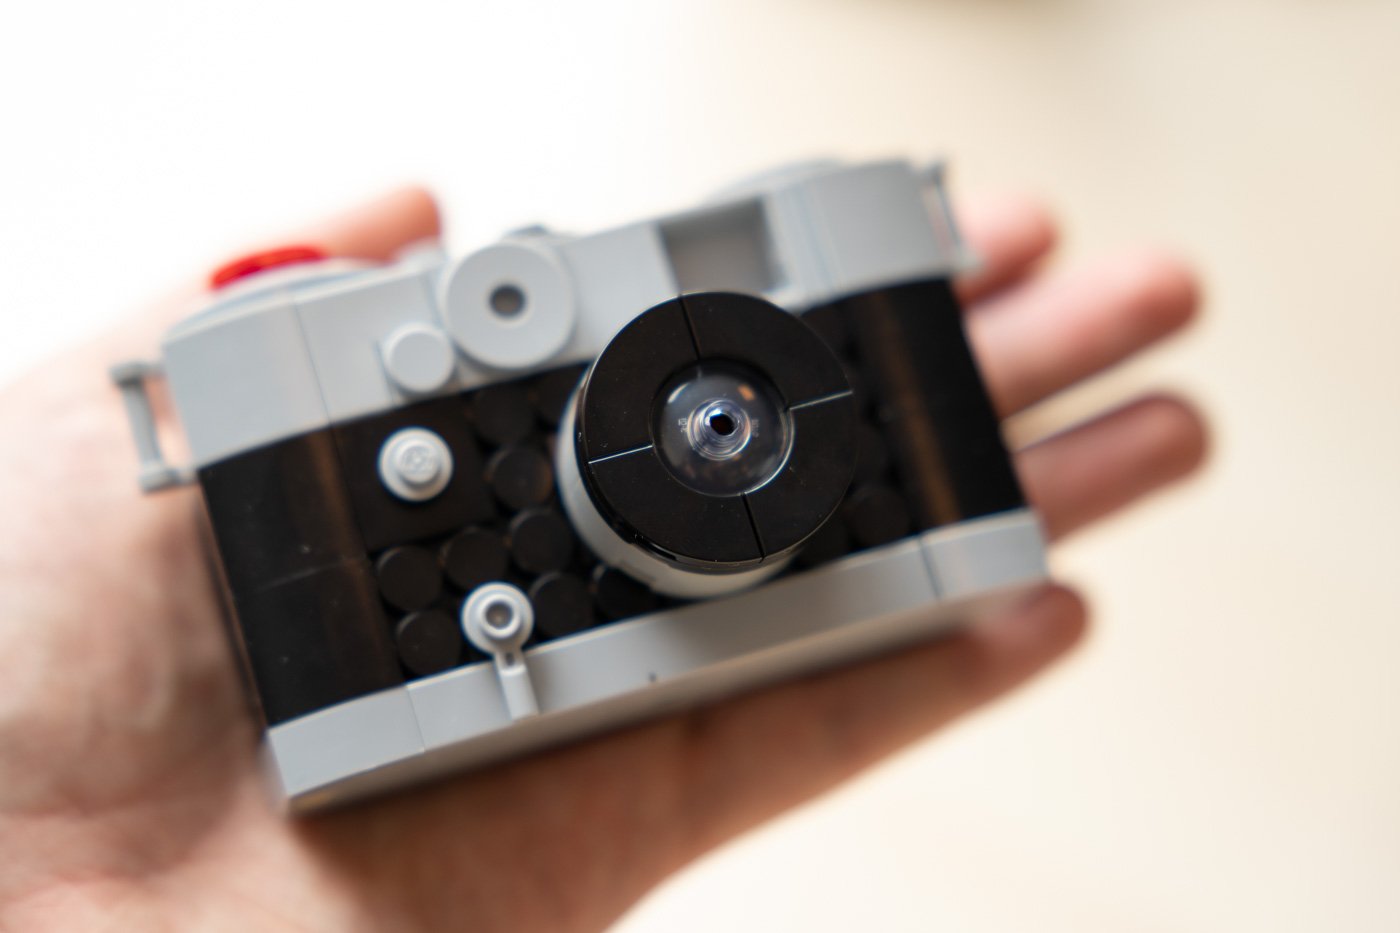 Le premier appareil photo numérique – La boite verte